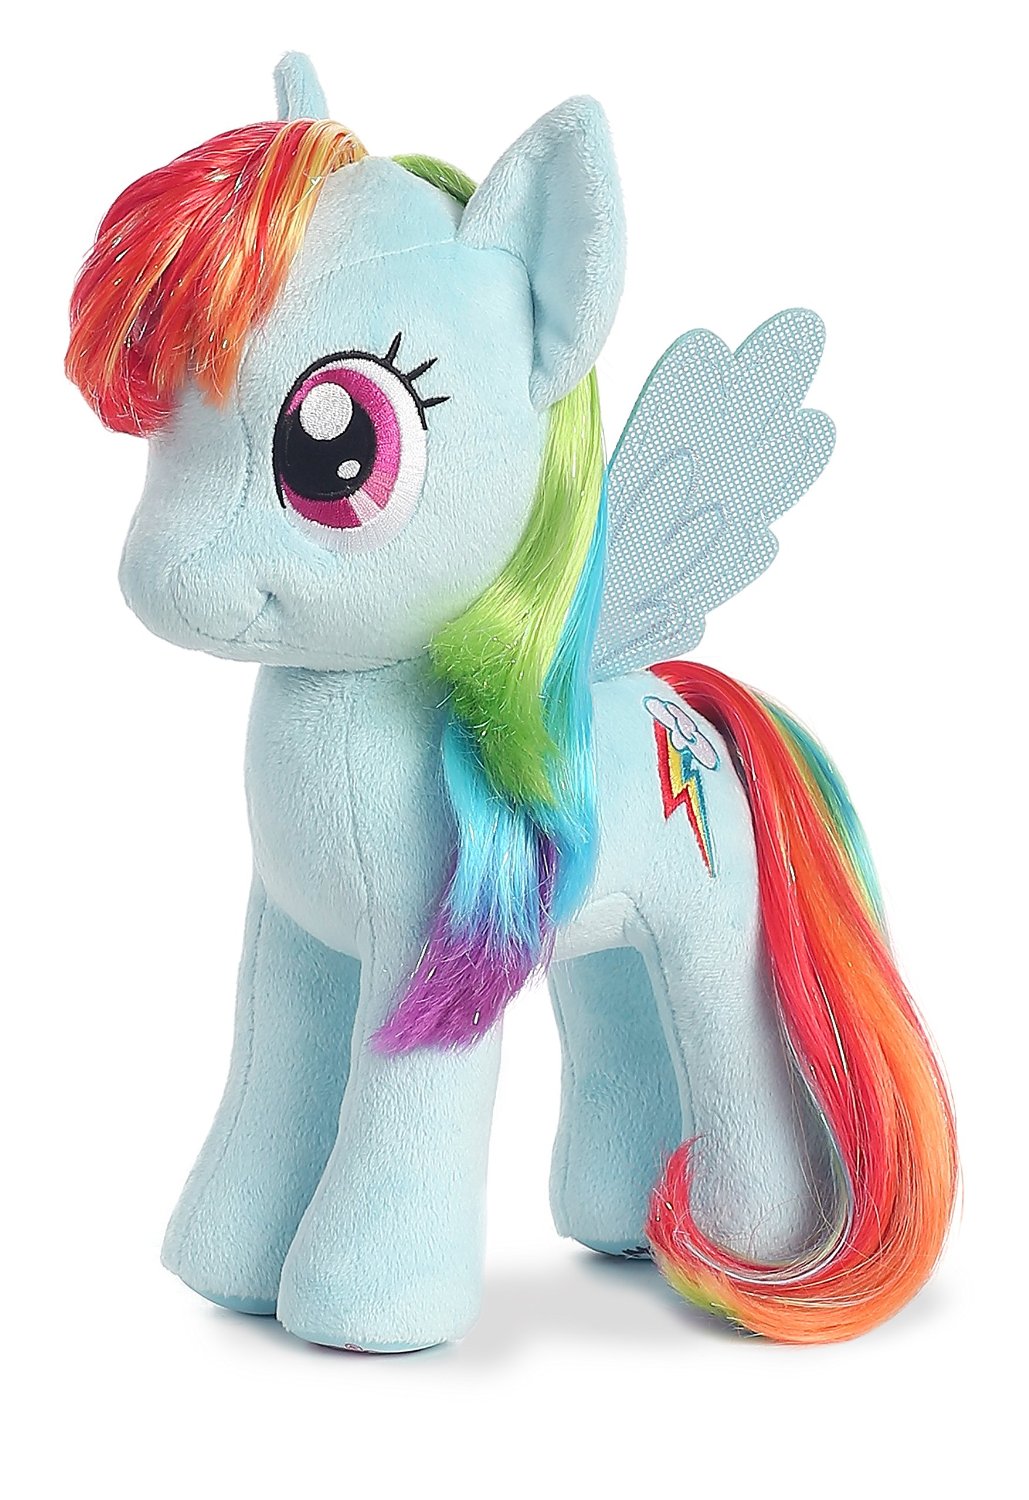 Pony 13. My little Pony игрушки Рейнбоу Дэш. My little Pony Радуга Дэш игрушка. My little Pony Реинбоу флэш игрушка. Пони Радуга Дэш 2010 год игрушка.